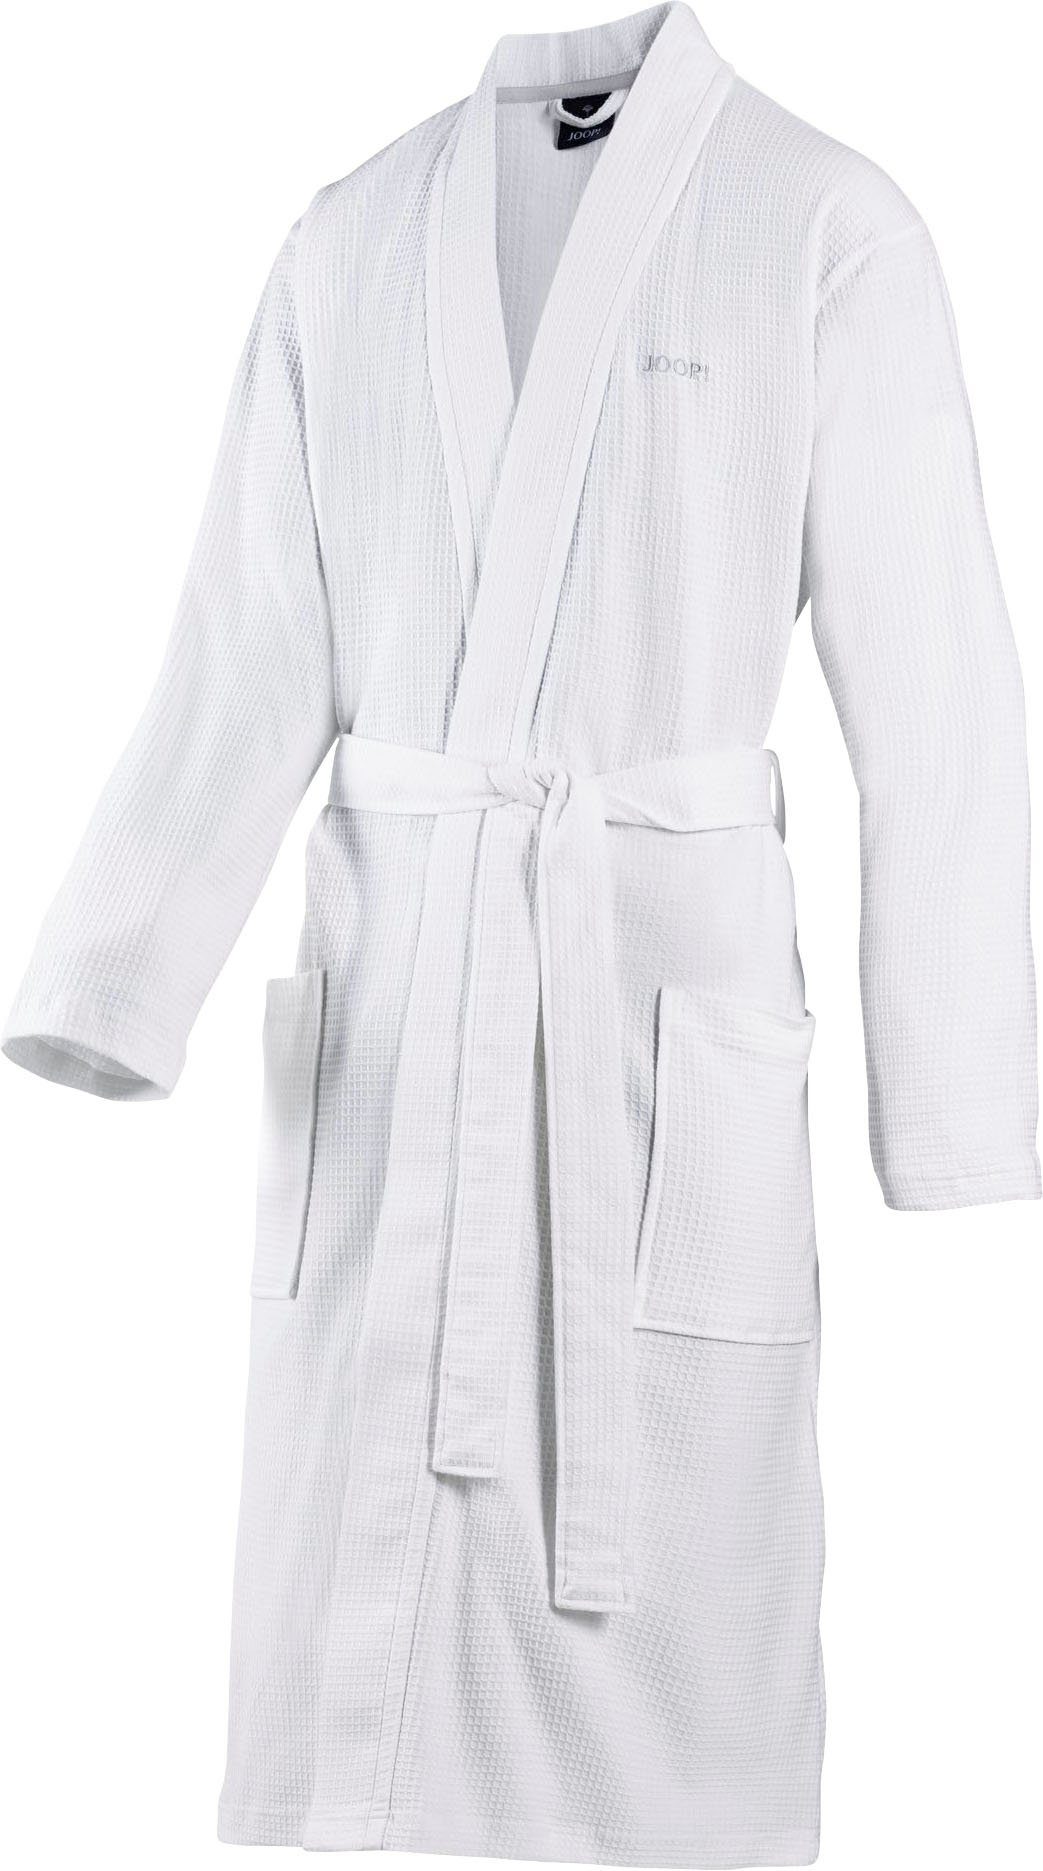 Joop! Herrenbademantel UNI-PIQUÉ, Kurzform, Baumwolle, Kimono-Kragen, Gürtel, mit kontrastigem Logo-Stick weiß